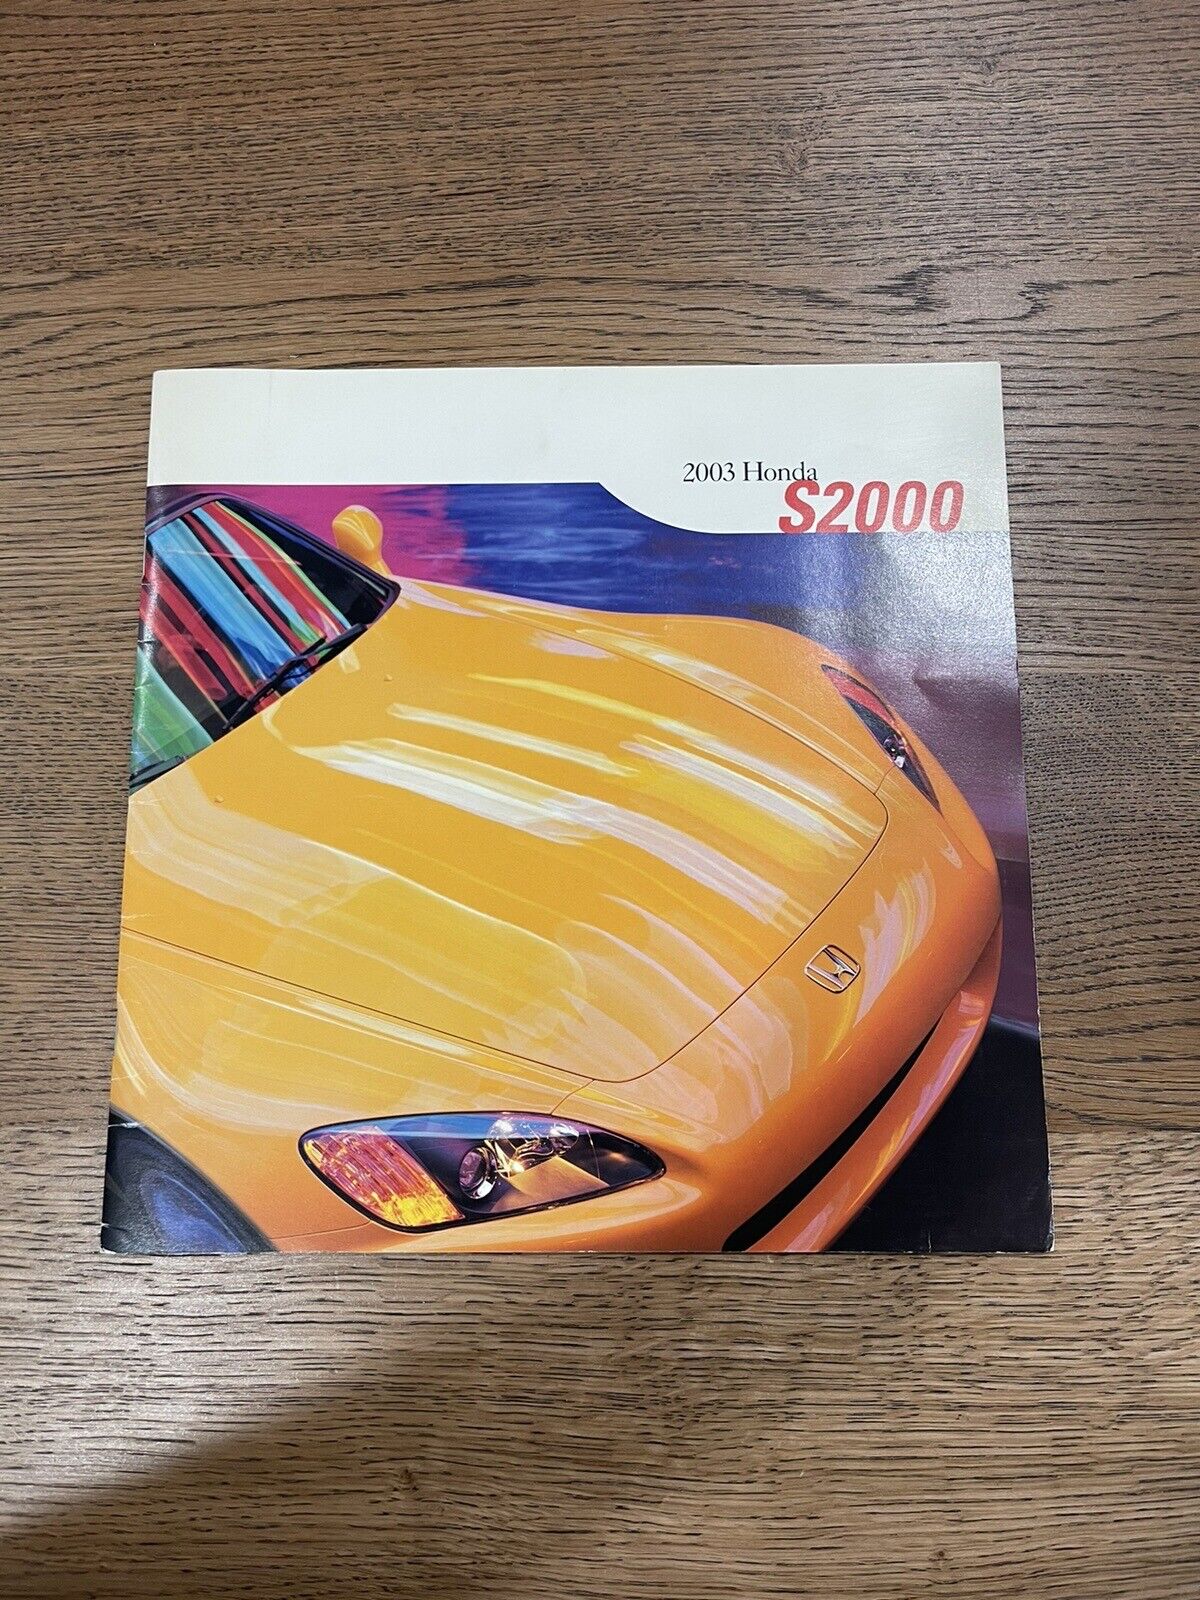 2003 Honda S2000 Dealer Sales Brochure - Mint